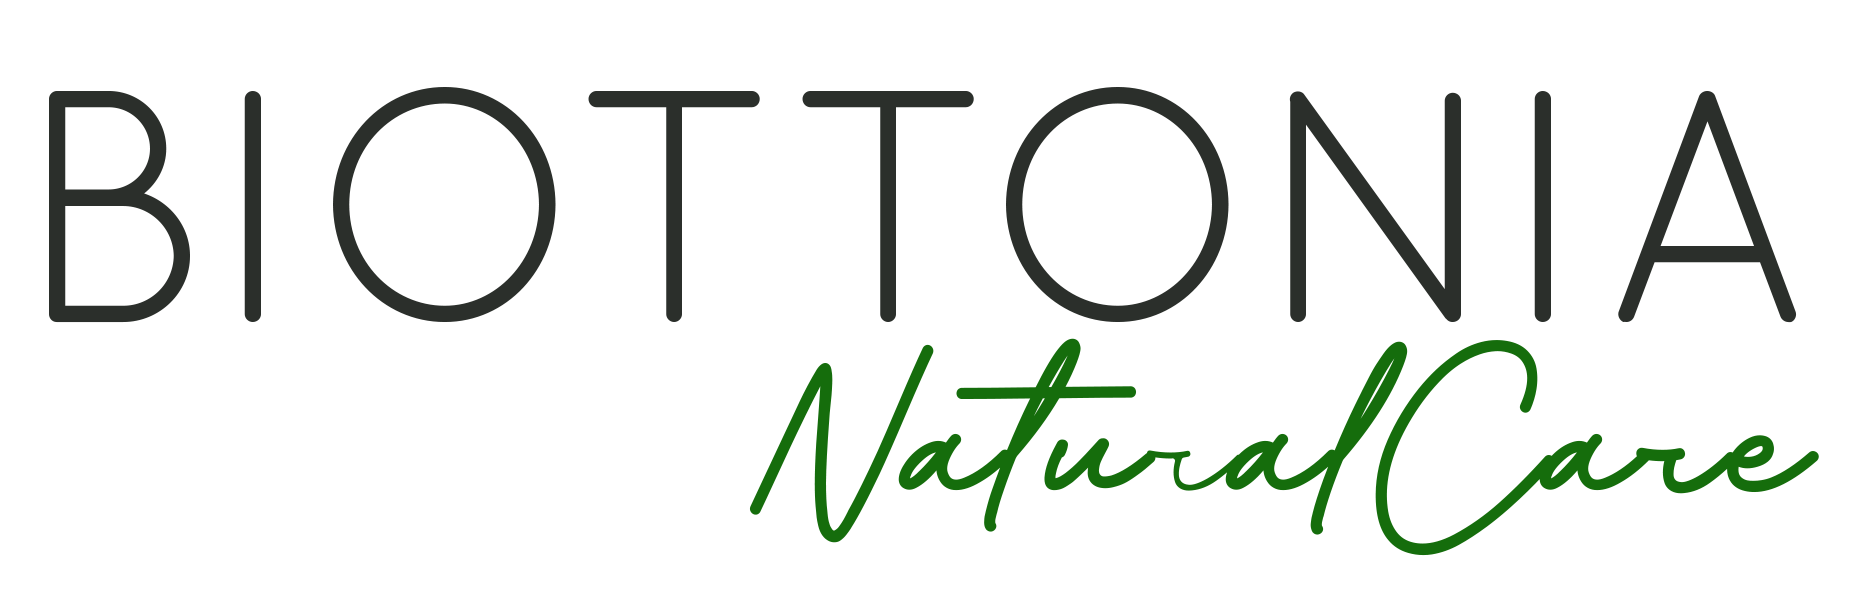 Biottonia Naturalcares